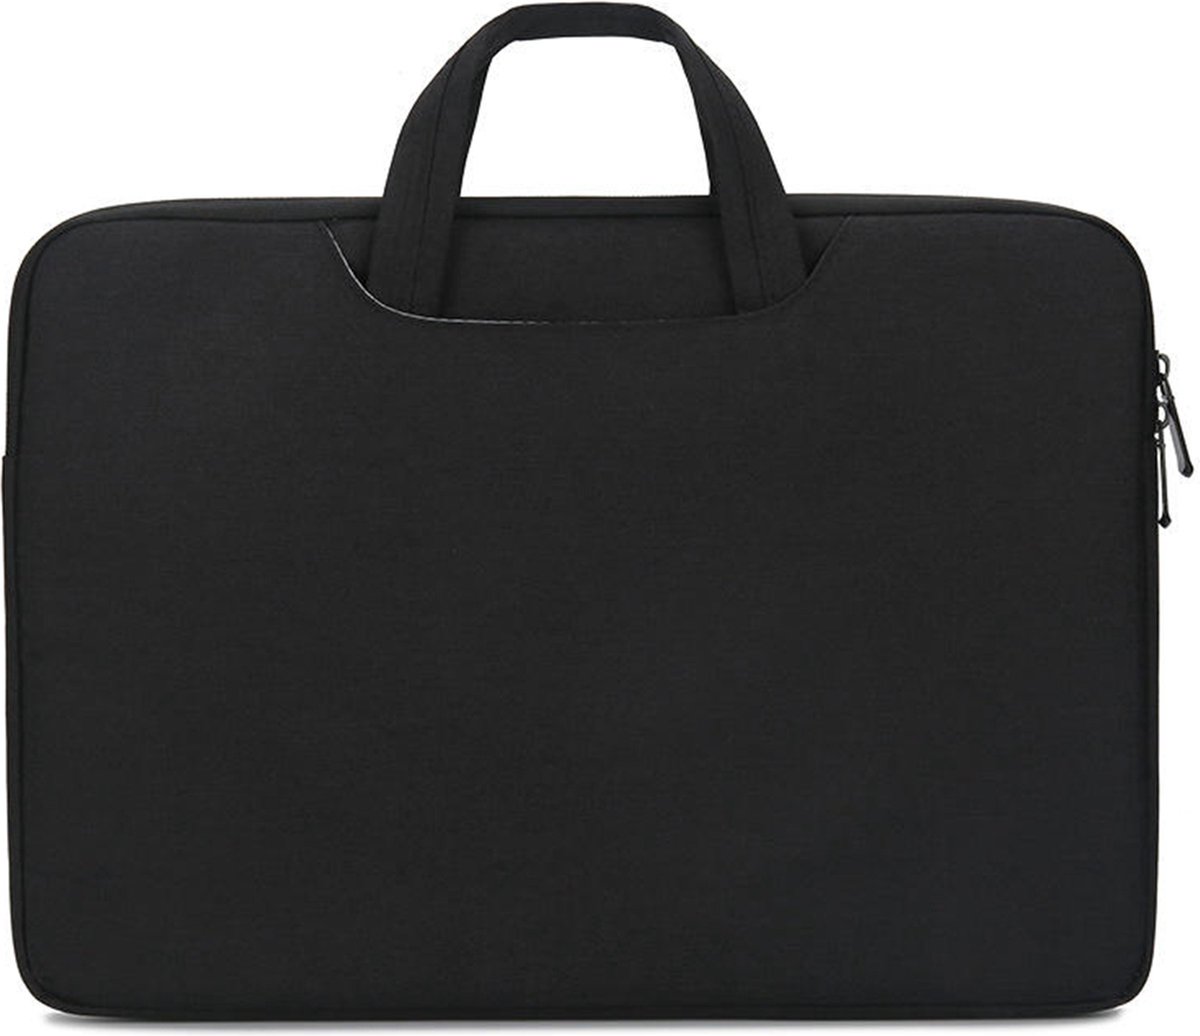 Case2go - Laptoptas geschikt voor Acer Aspire - Laptophoes 14 inch - Zwart